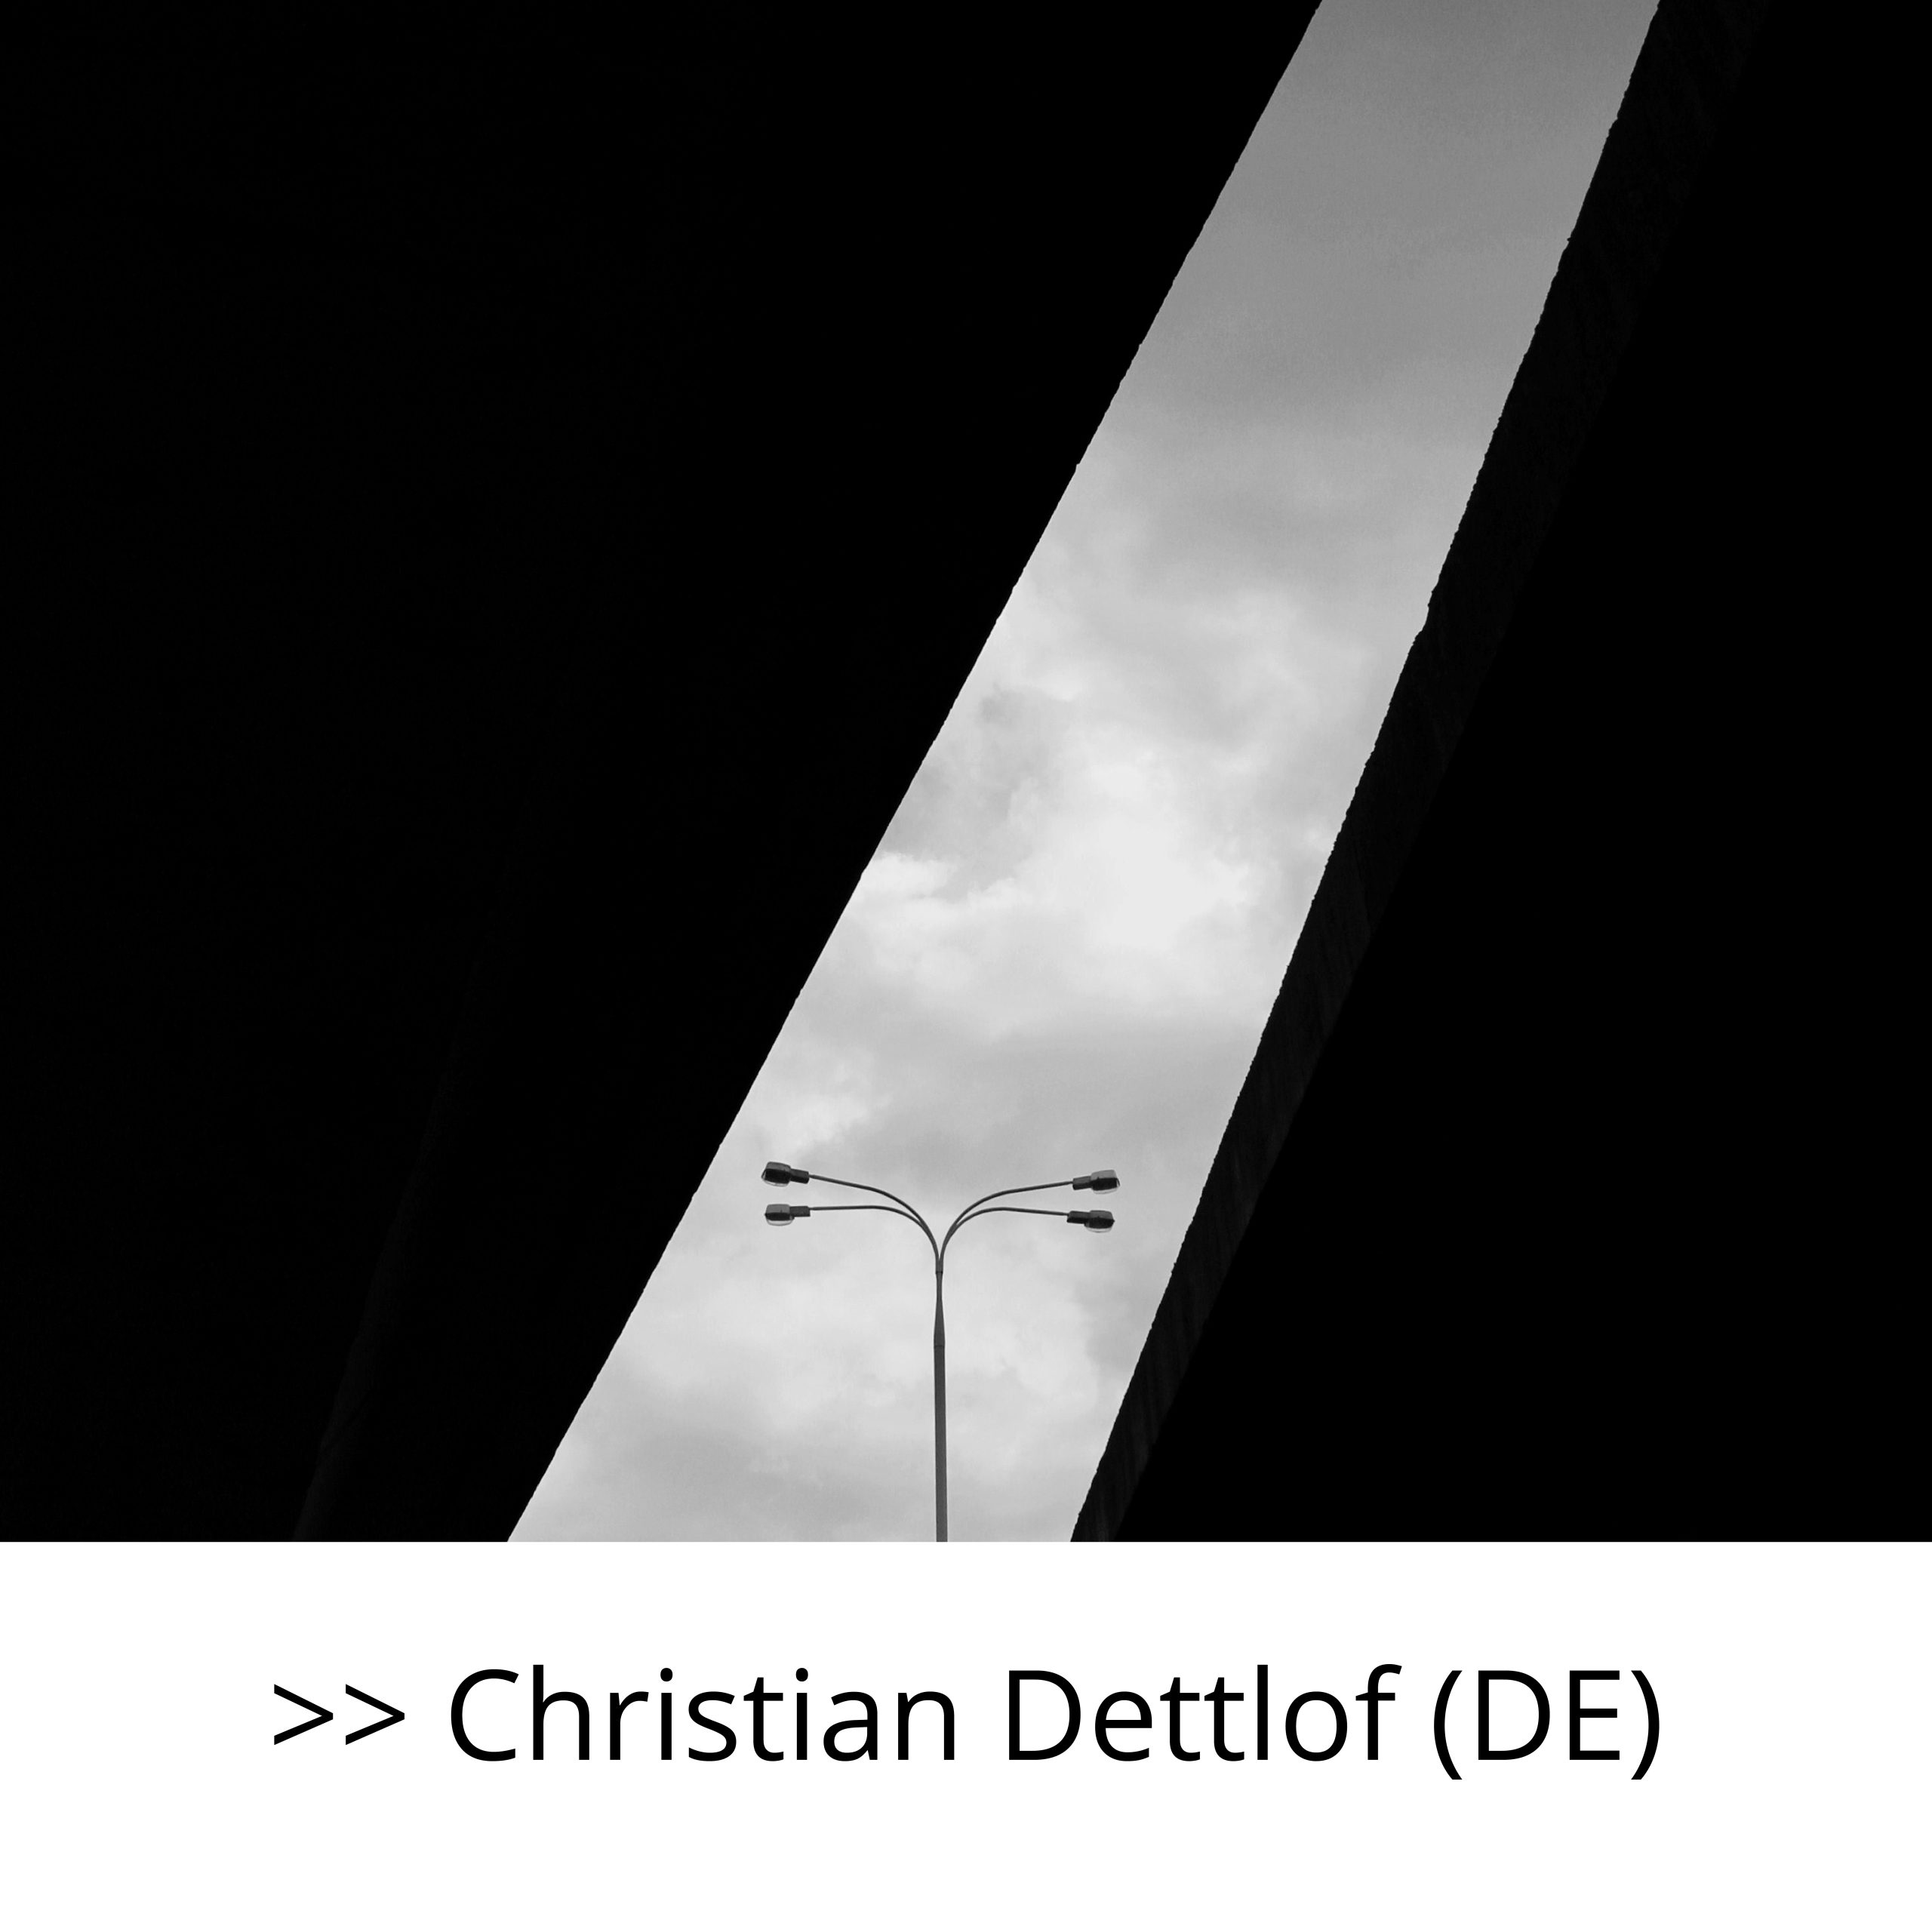 CHRISTIAN DETTLOF (DE)